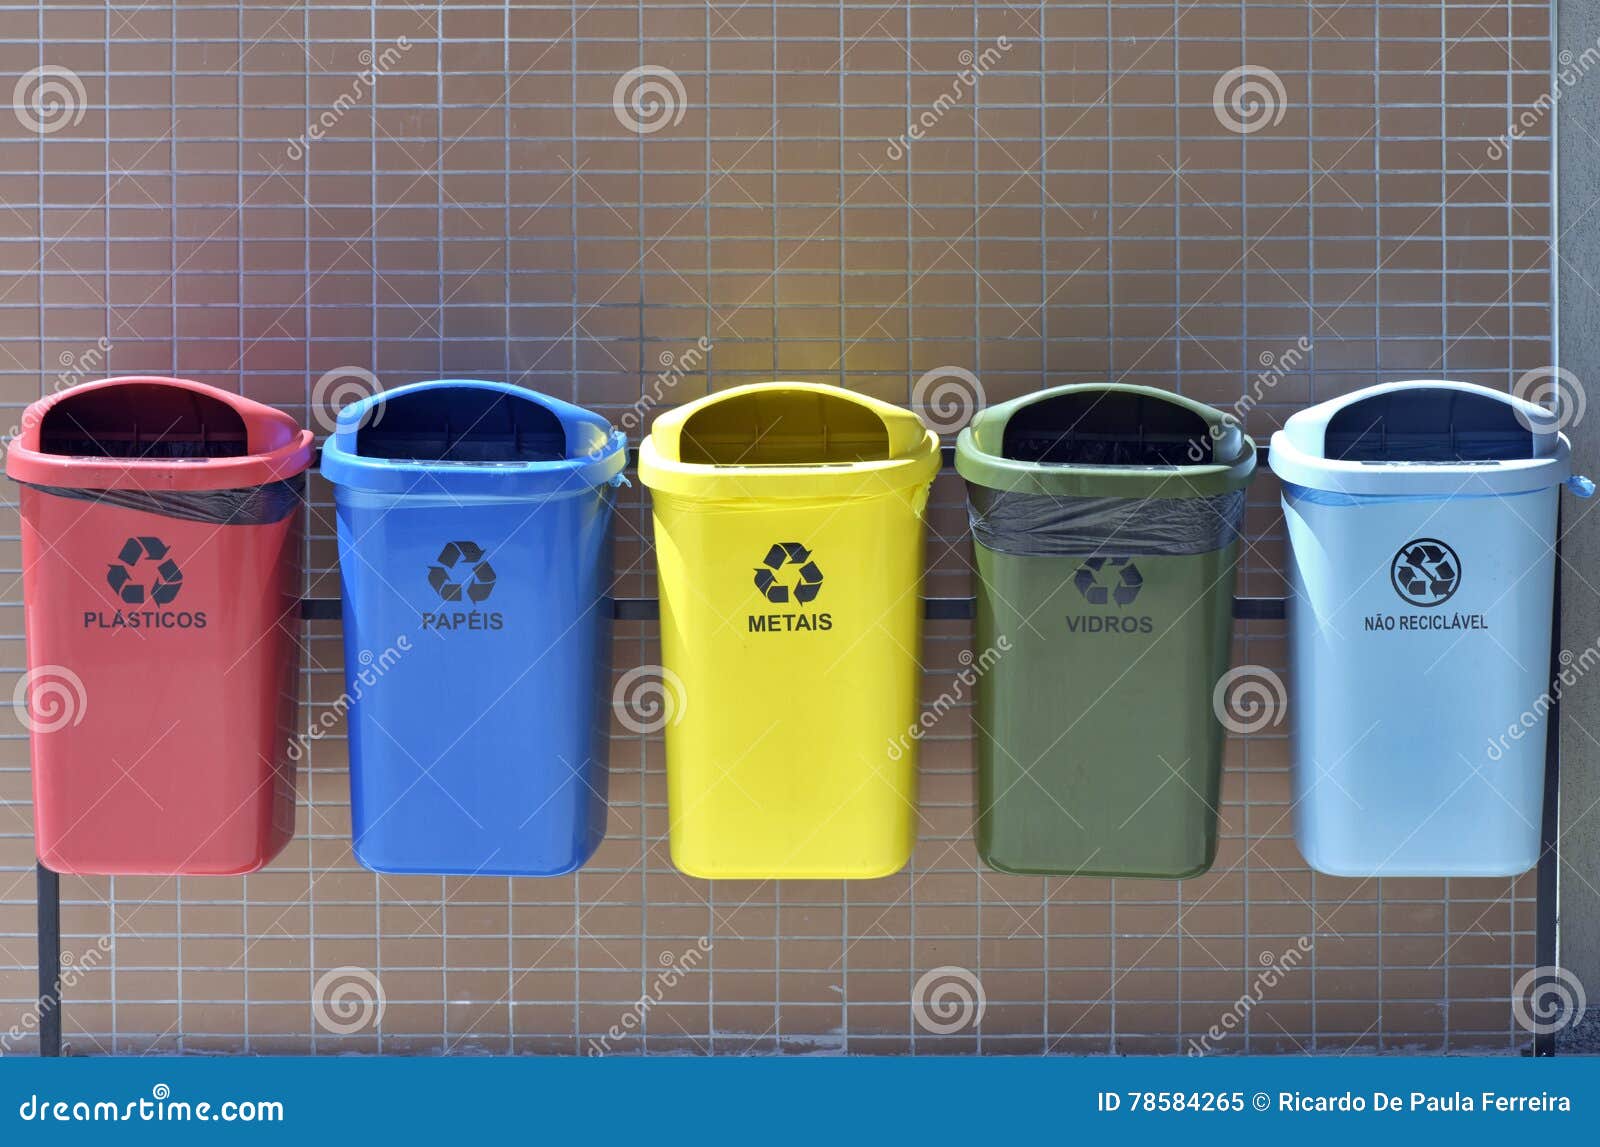 Envase reciclable inútil - SEROPEDICA, RJ, el BRASIL - 7 de enero de 2016